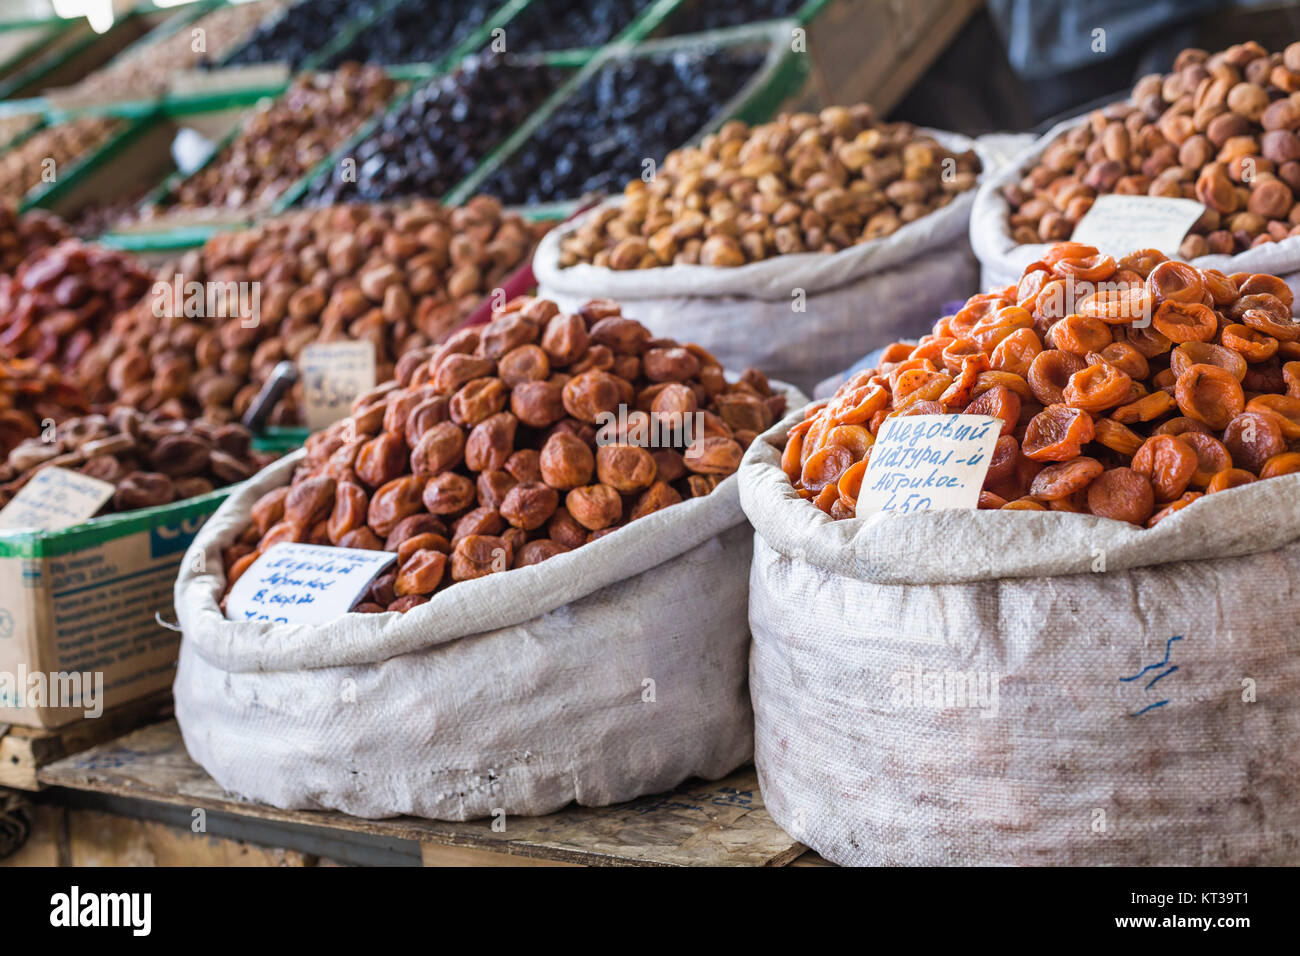 Frutta secca e spezie come anacardi, uvetta, chiodi di garofano, anice, ecc. sul display per la vendita in un bazar di SSL a Bishkek Kirghizistan. Foto Stock